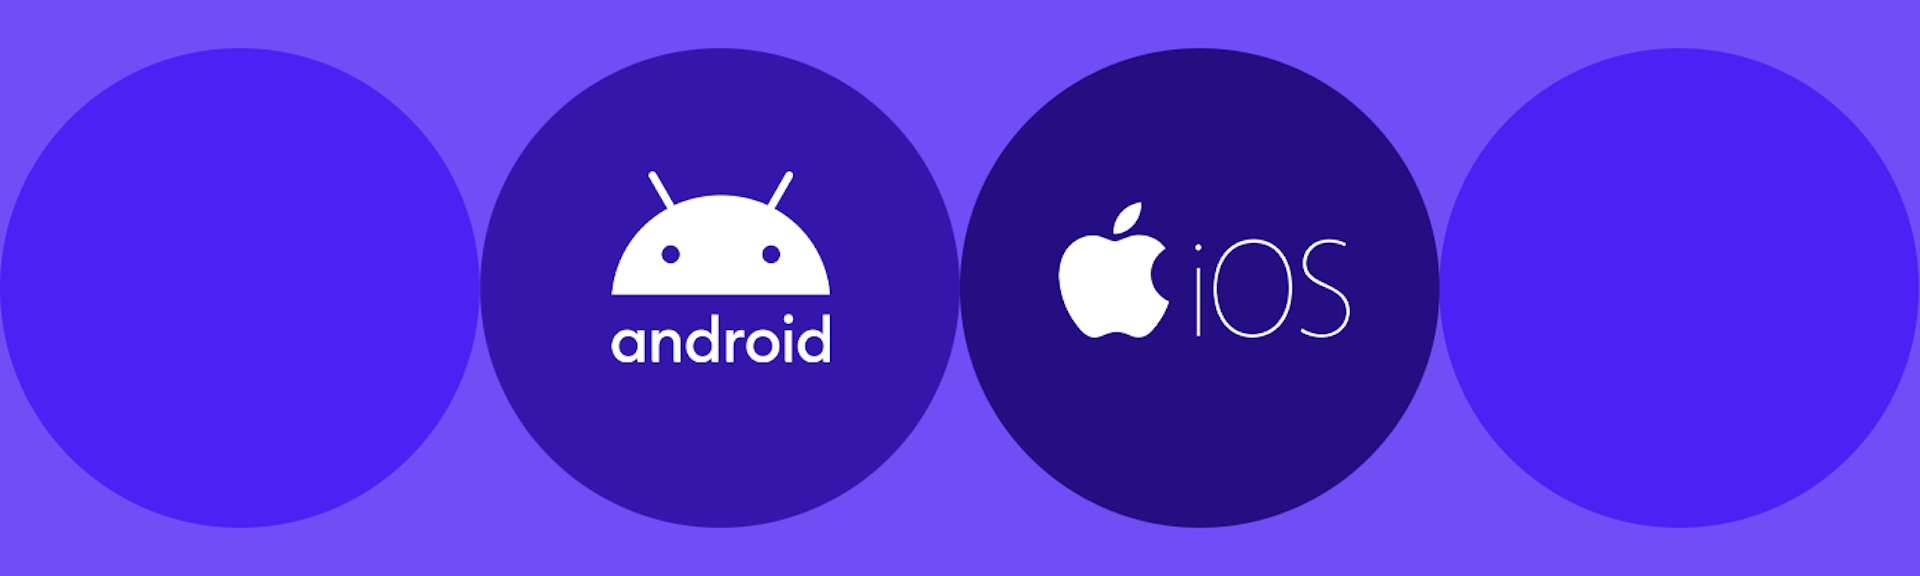 Conoce las ventajas y desventajas de Android e iOS, ¡elige tu mejor opción!